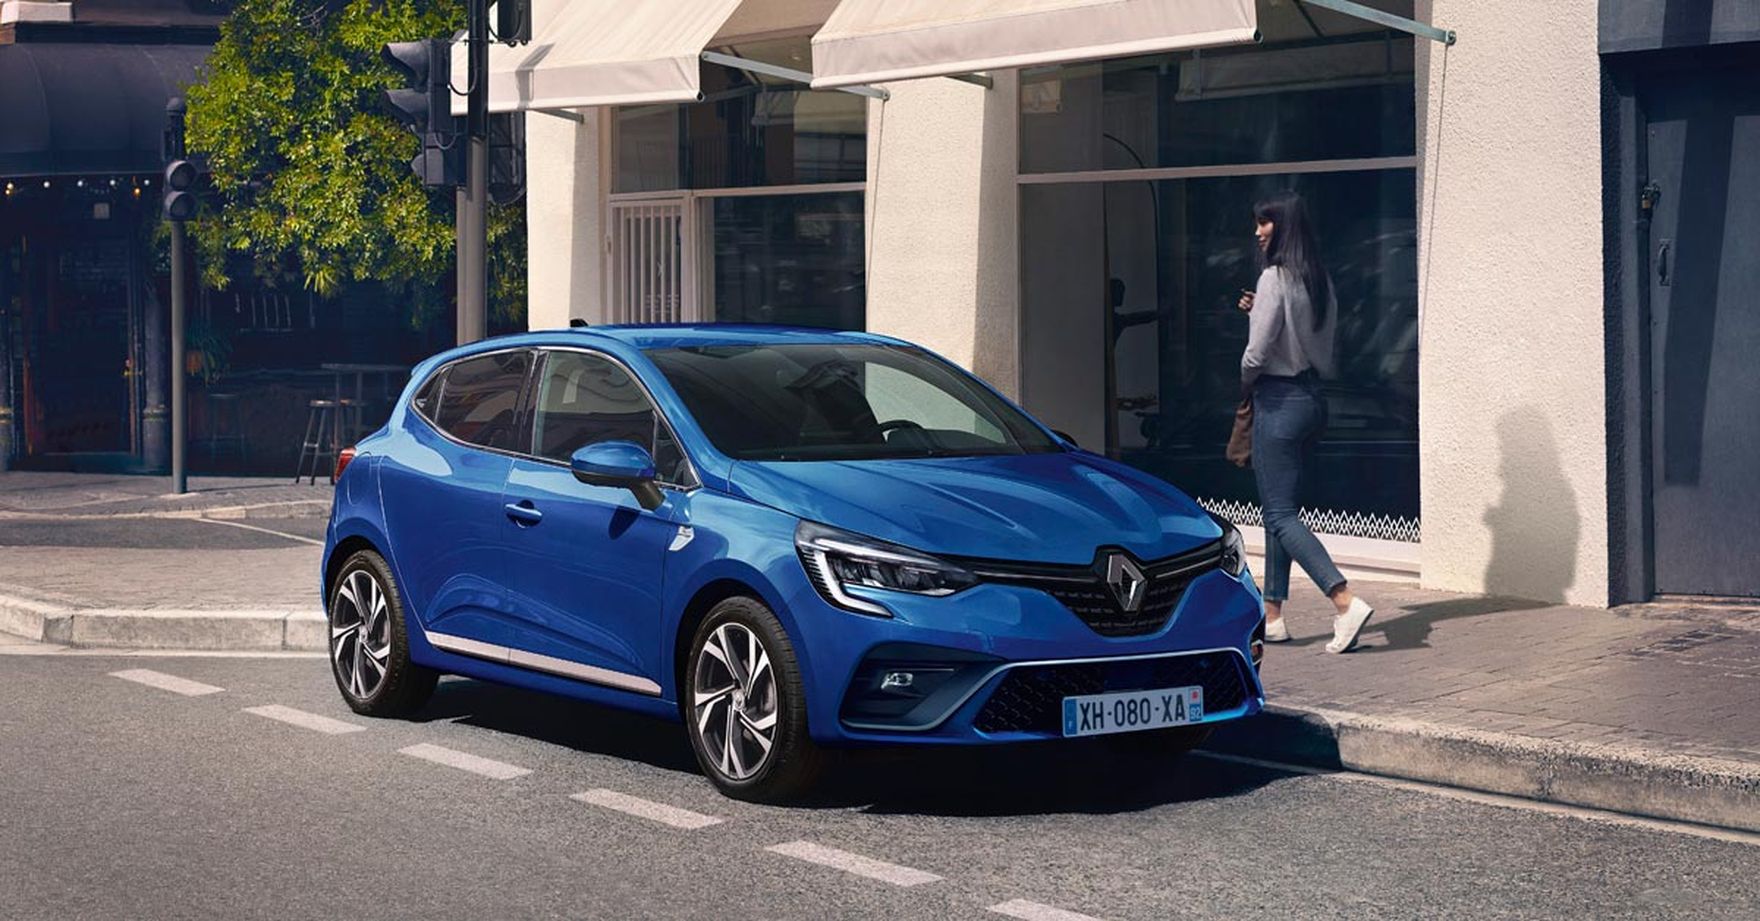 Hybrydowe korzyści, czyli co oferuje Renault Clio E-TECH?